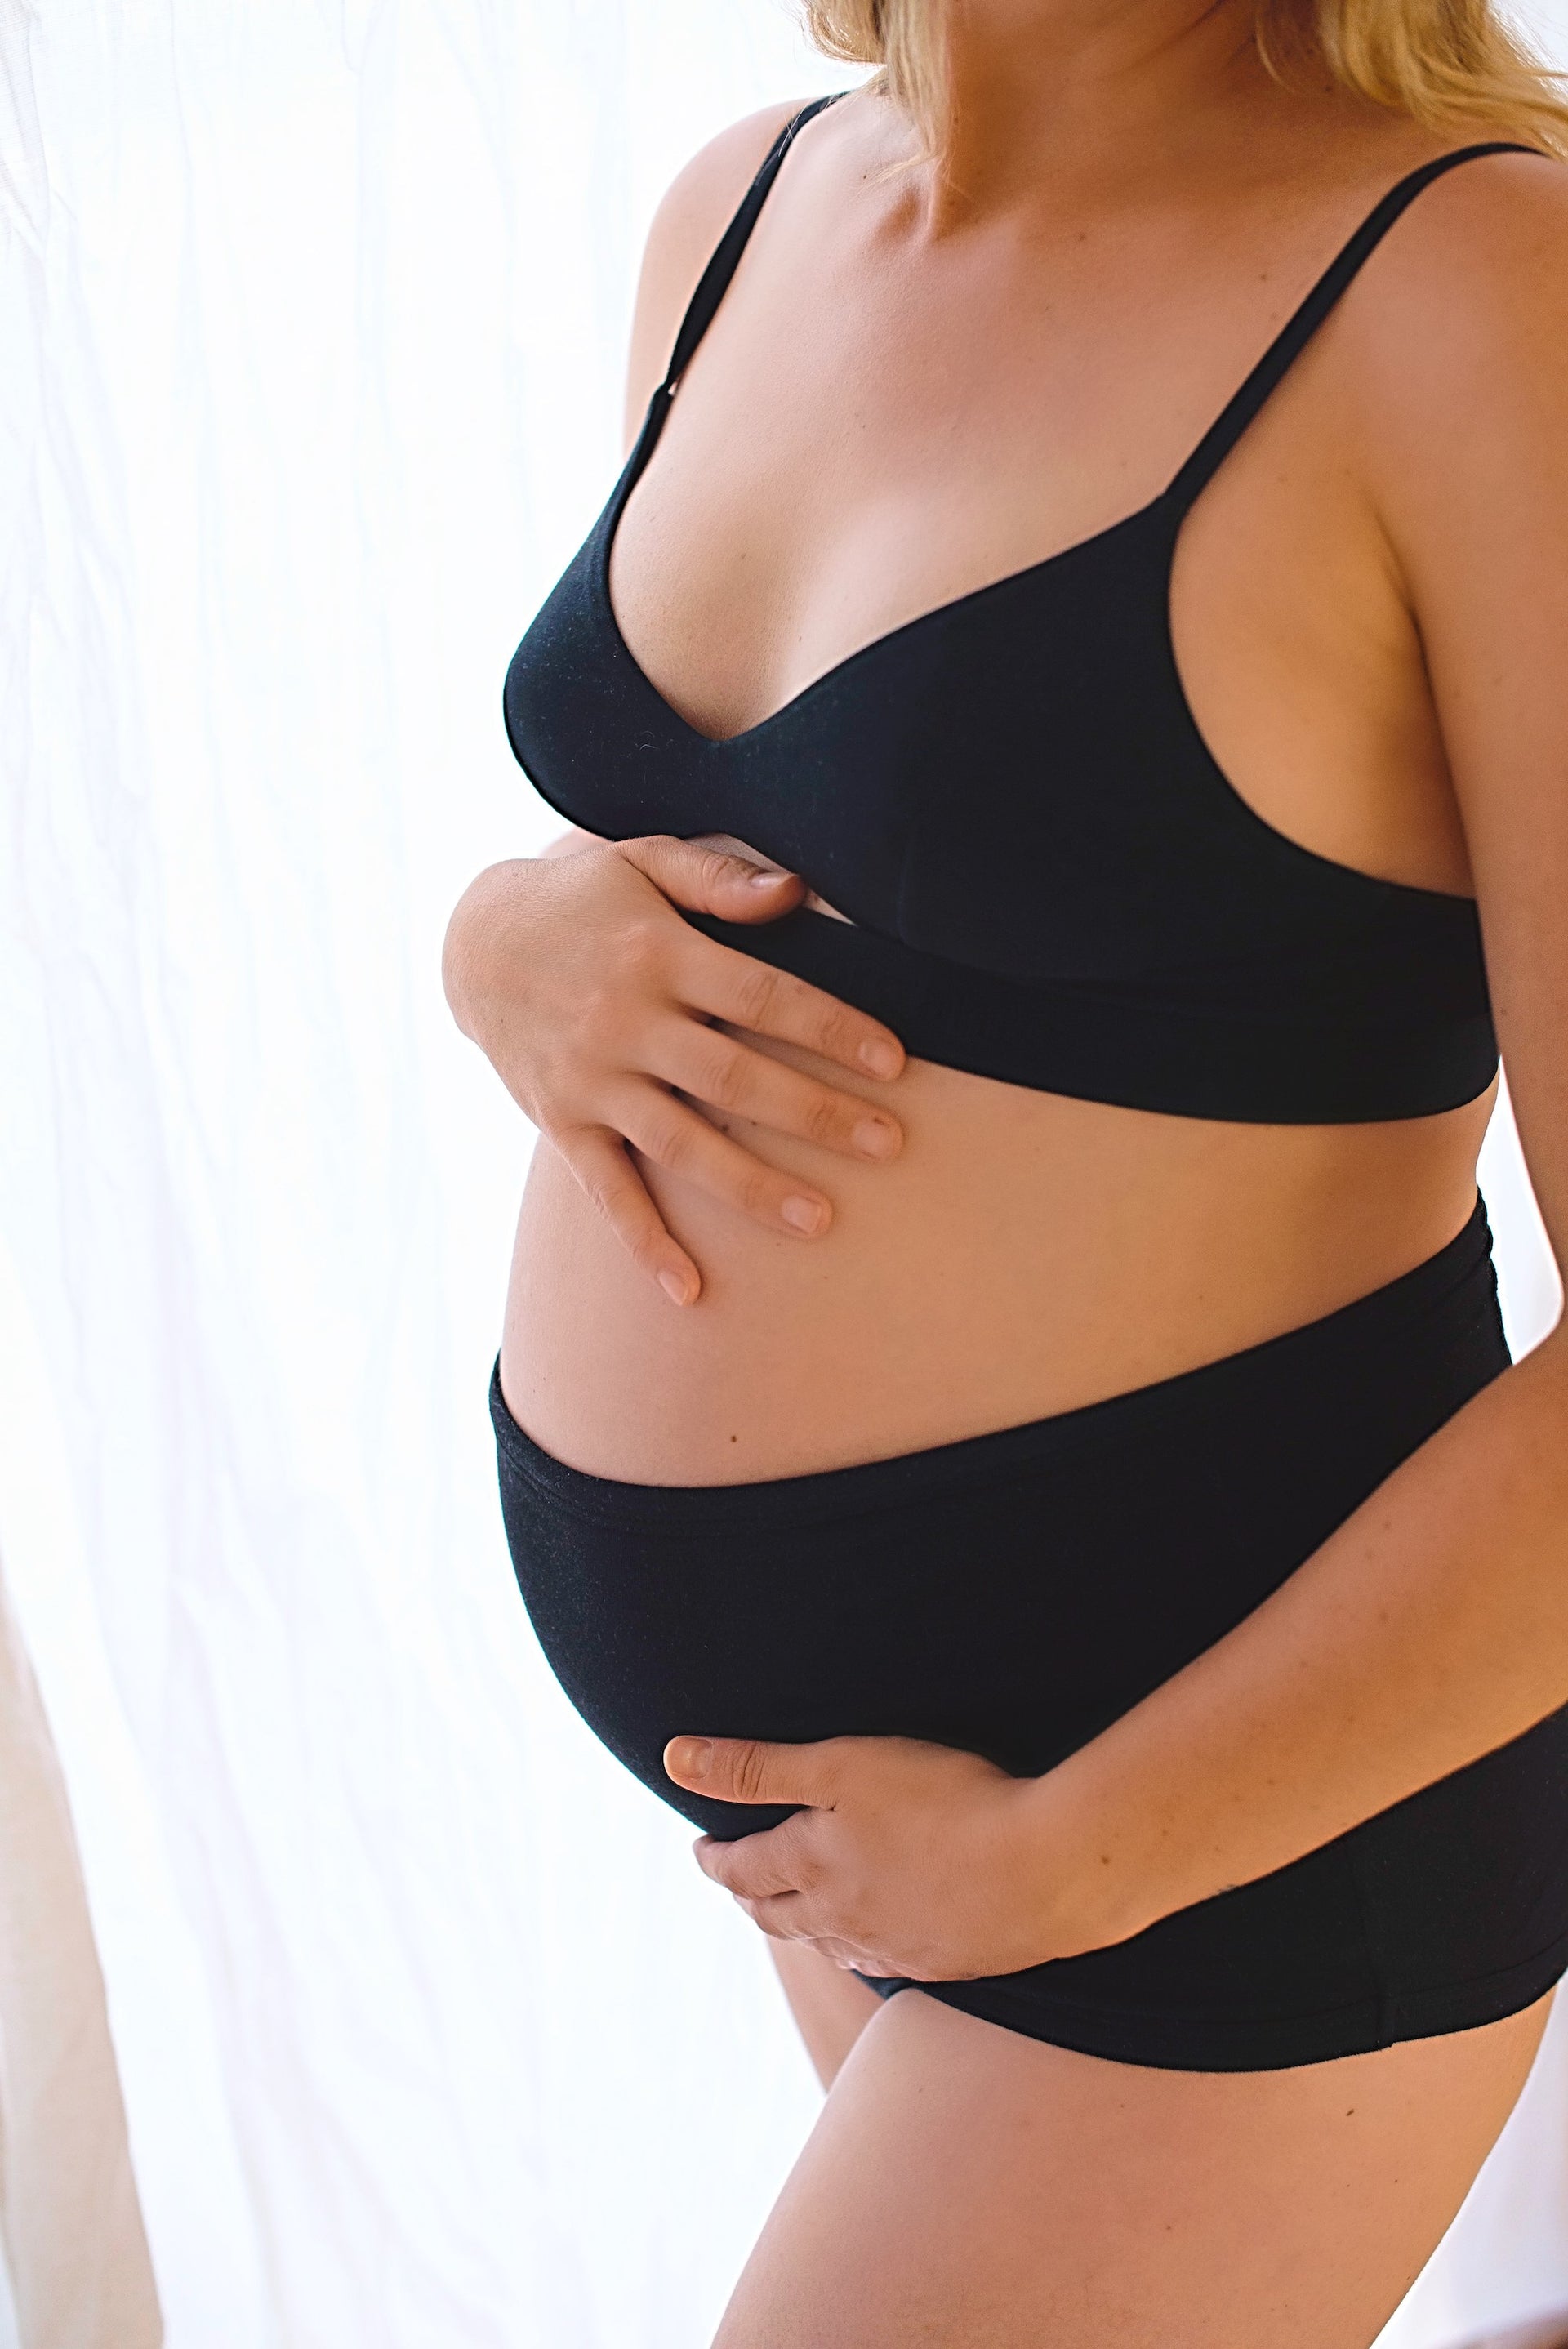 Pregnancy & Postpartum Highrise Undies in Midnight – Momme